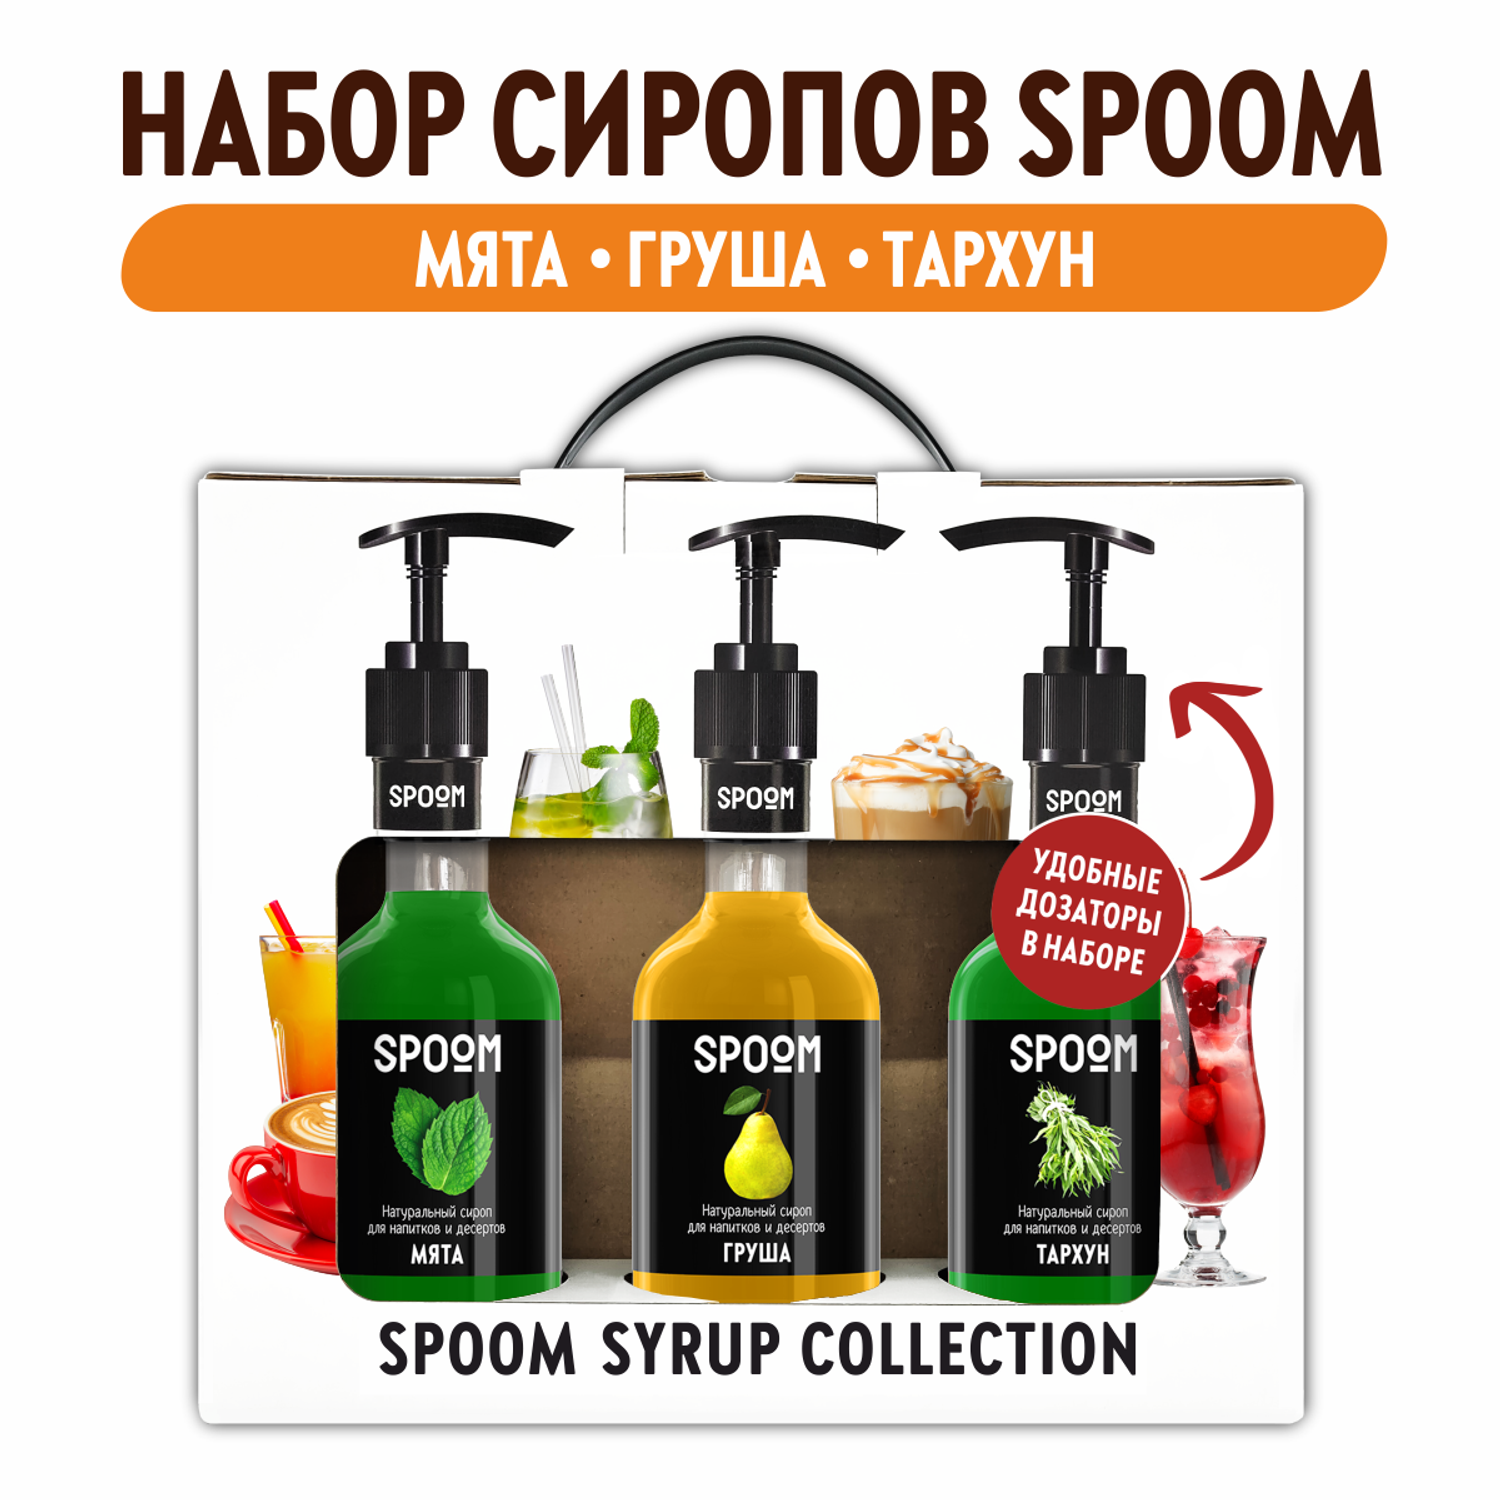 Набор сиропов SPOOM Тархун Груша Мята для коктейлей лимонадов и чая3шт 250мл + 3 дозатора - фото 1